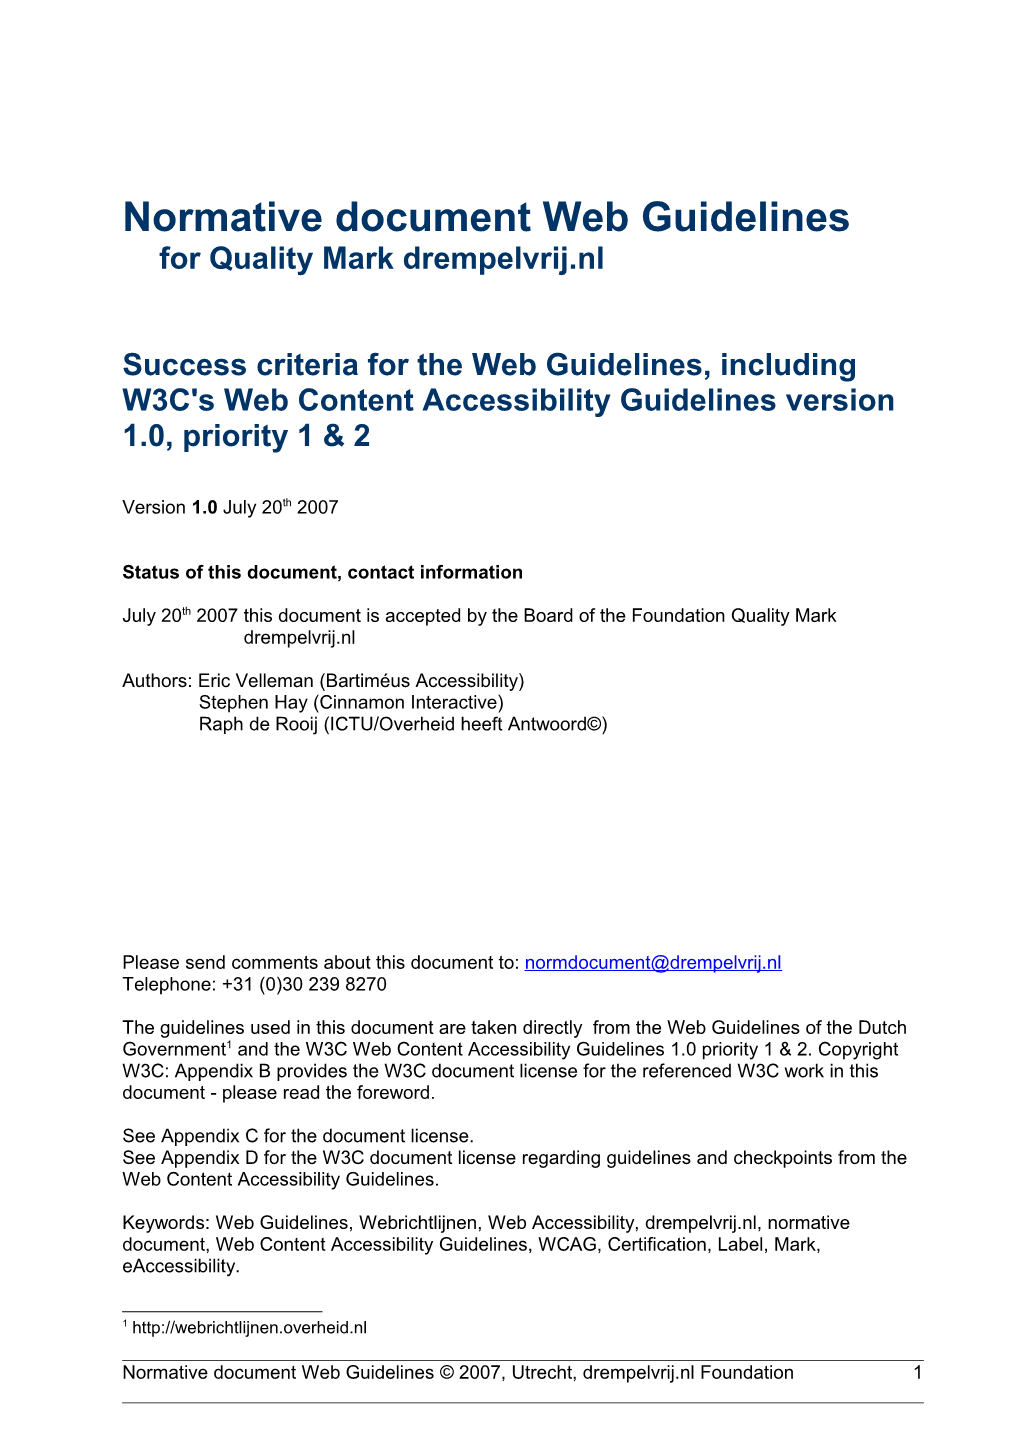 Quality Mark Webrichtlijnen, Normative Document